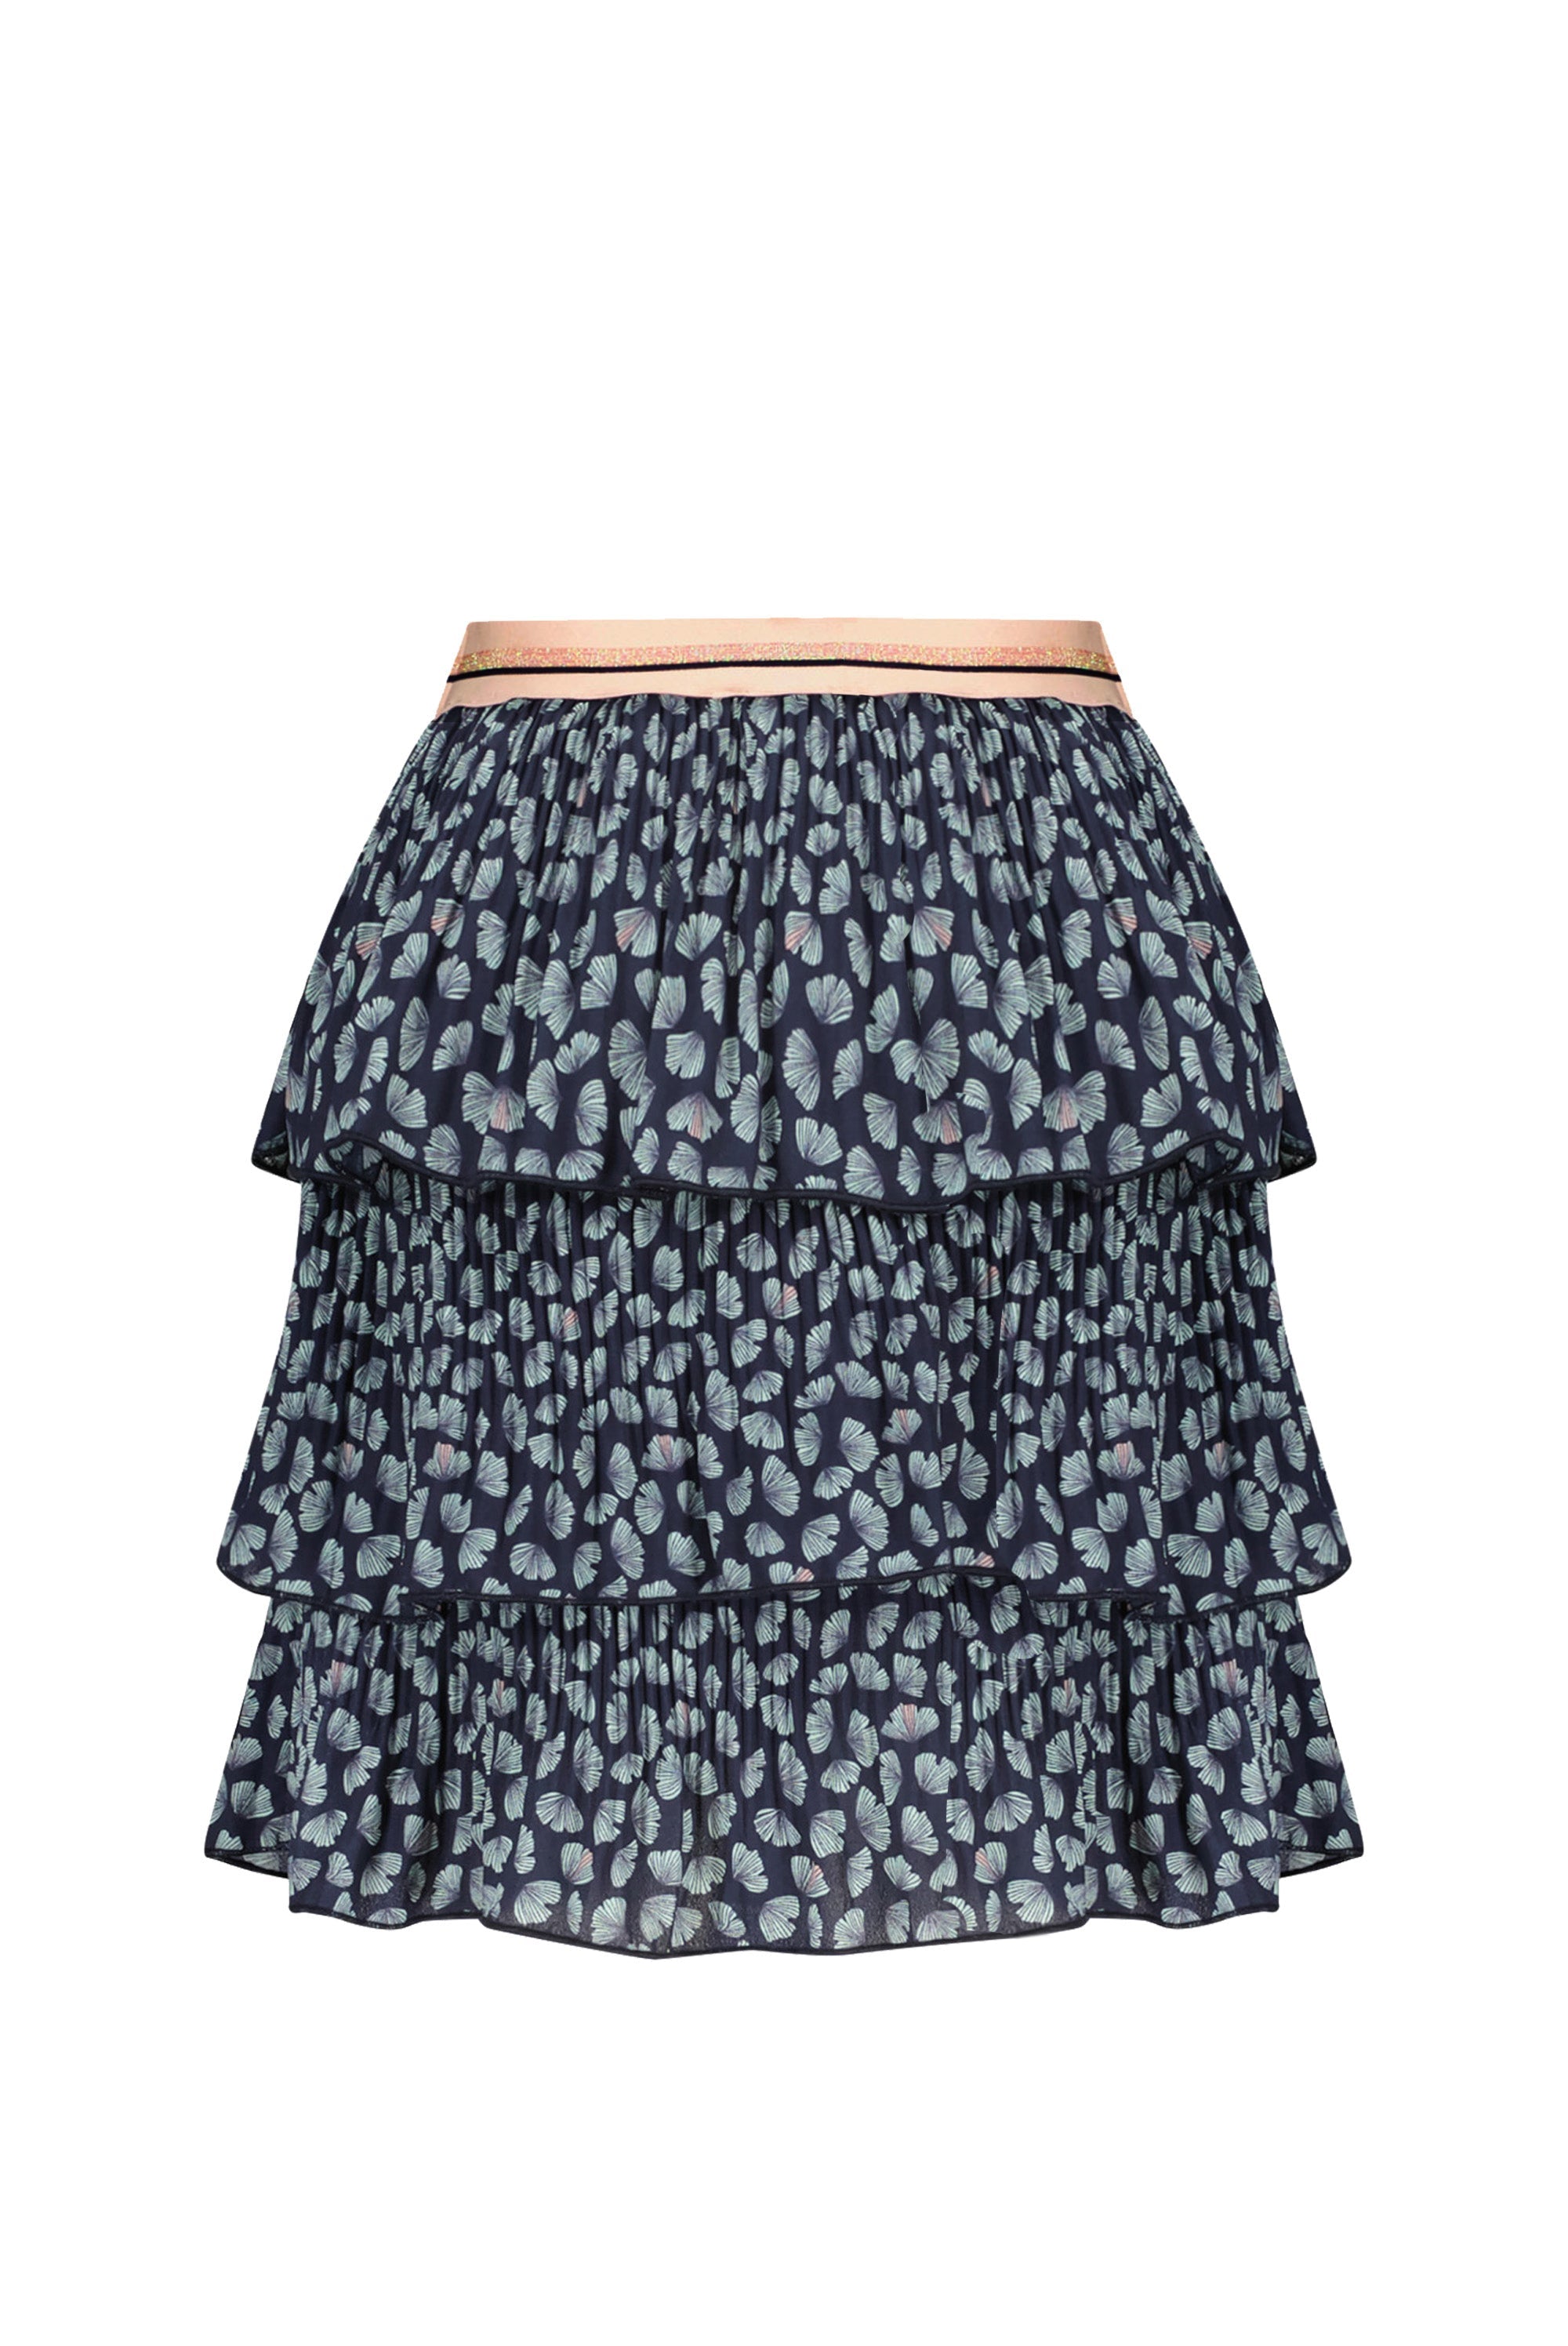 Meisjes Nika 3 layered short skirt van NoNo in de kleur Navy Blazer in maat 134-140.